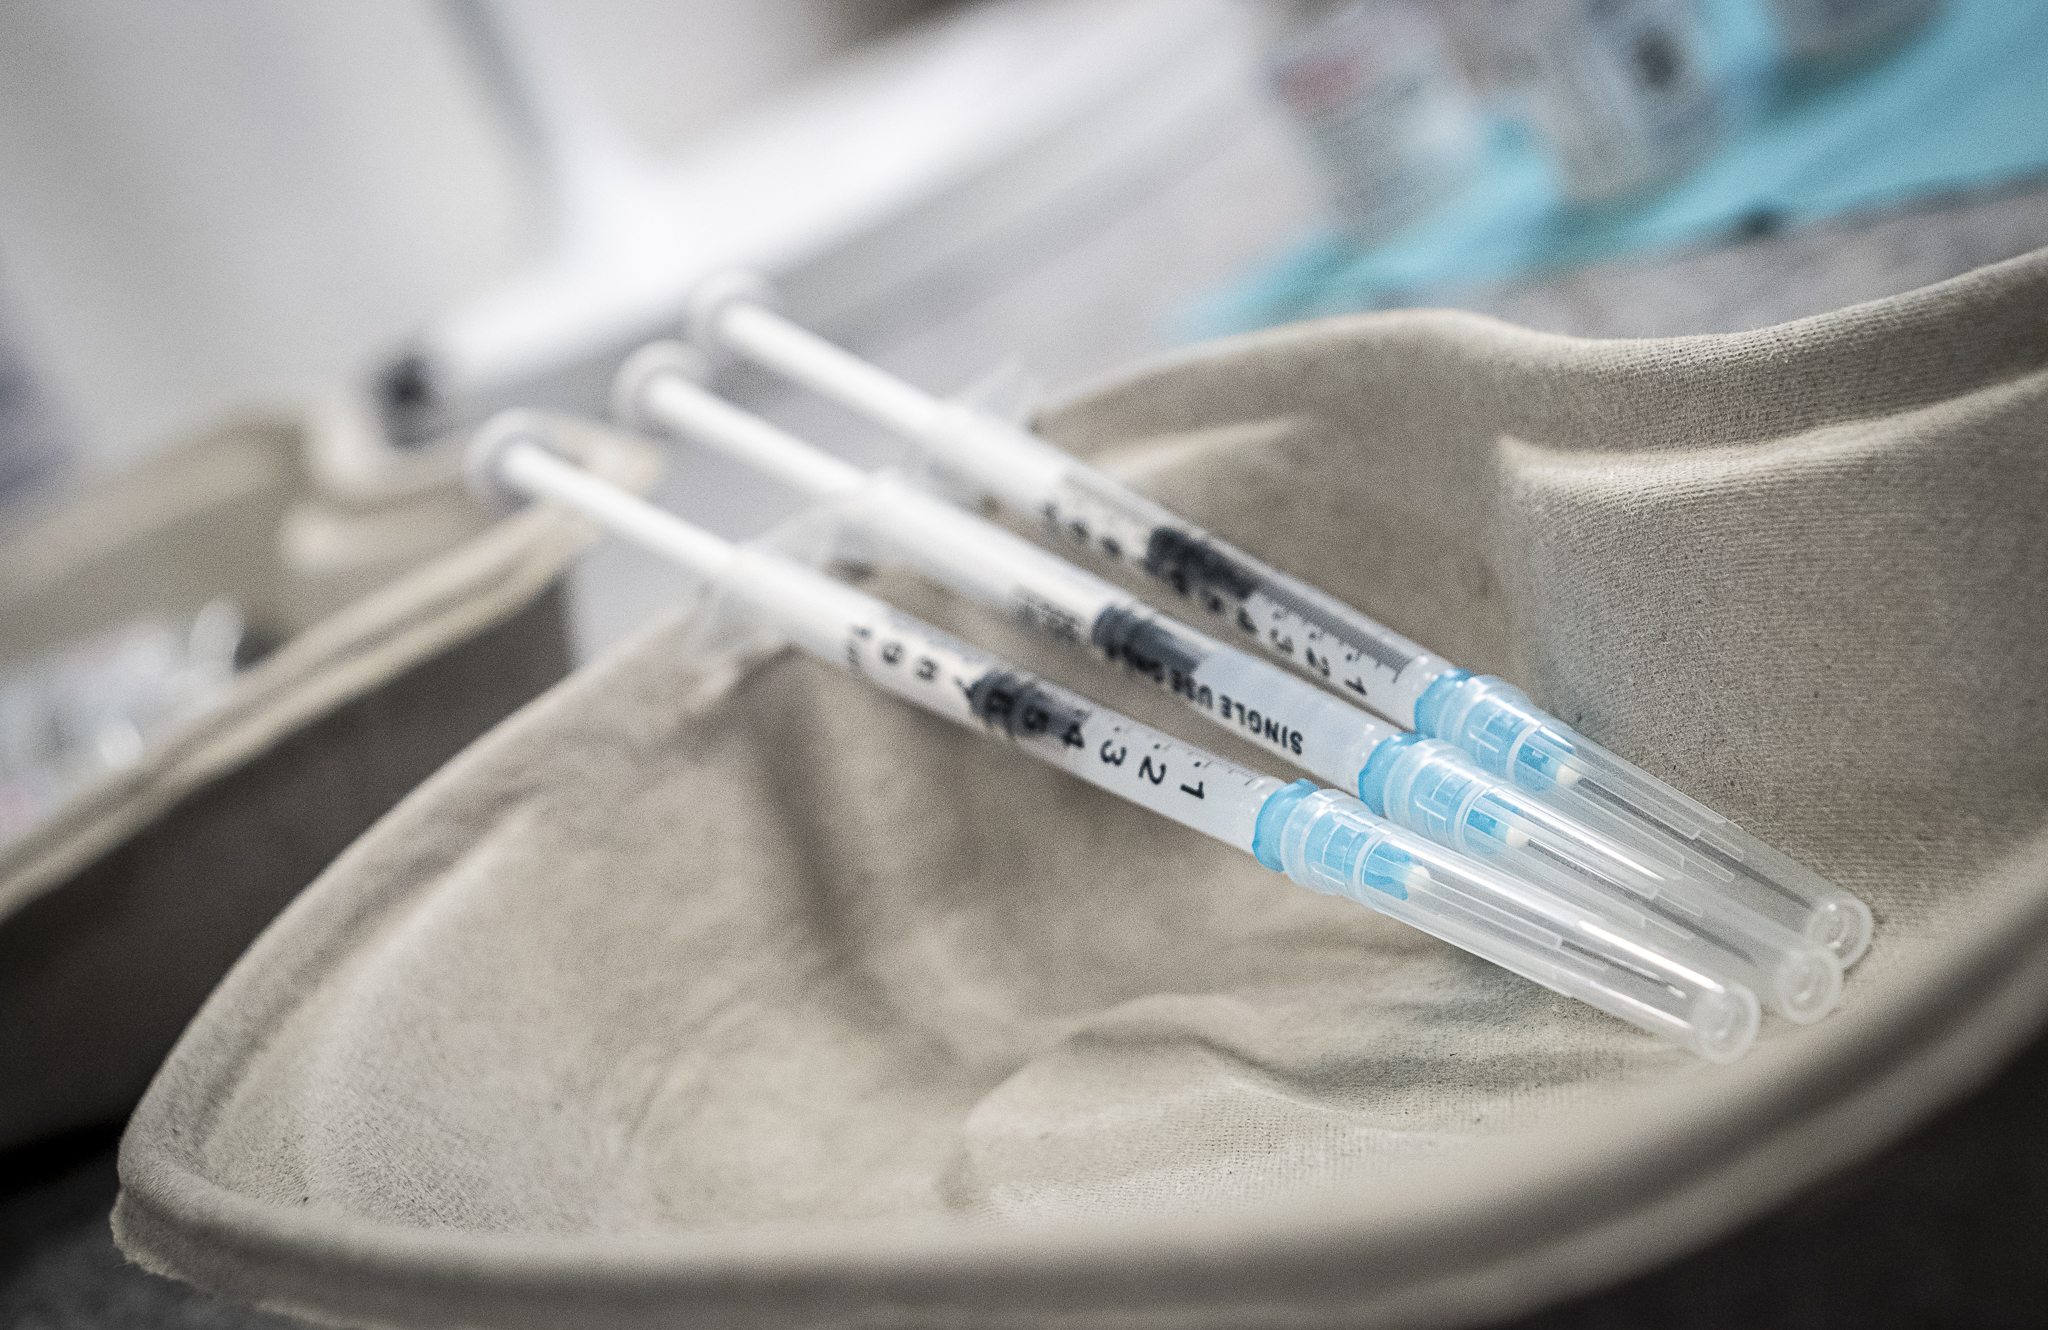 Le canton de Vaud va fermer trois centres de vaccination, dont celui d'Aigle